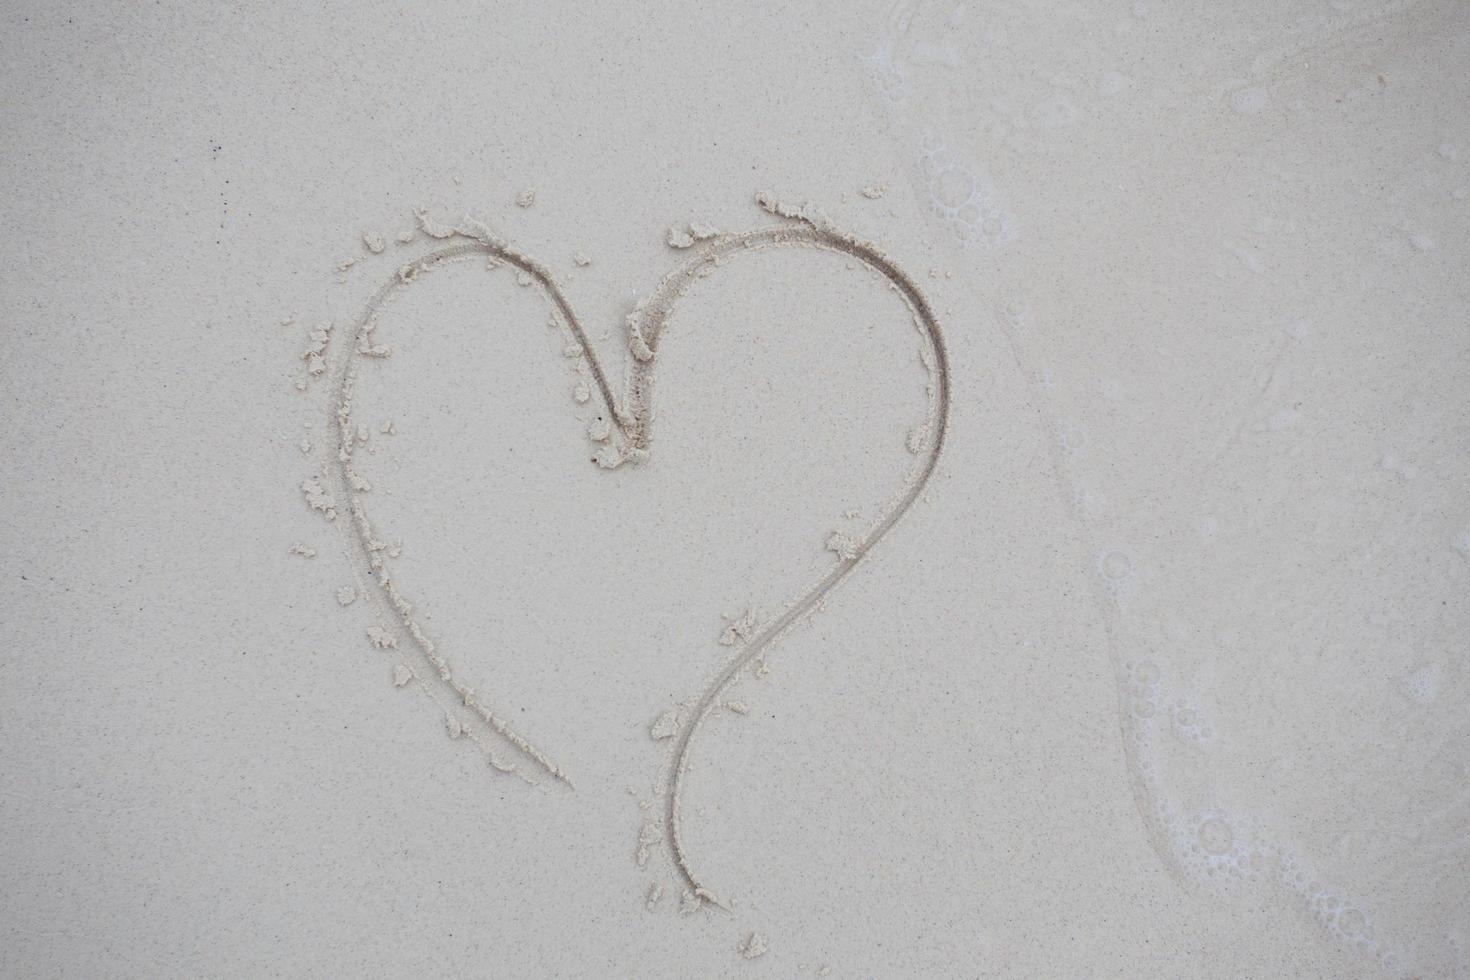 cuori disegnati sulla sabbia di una spiaggia foto